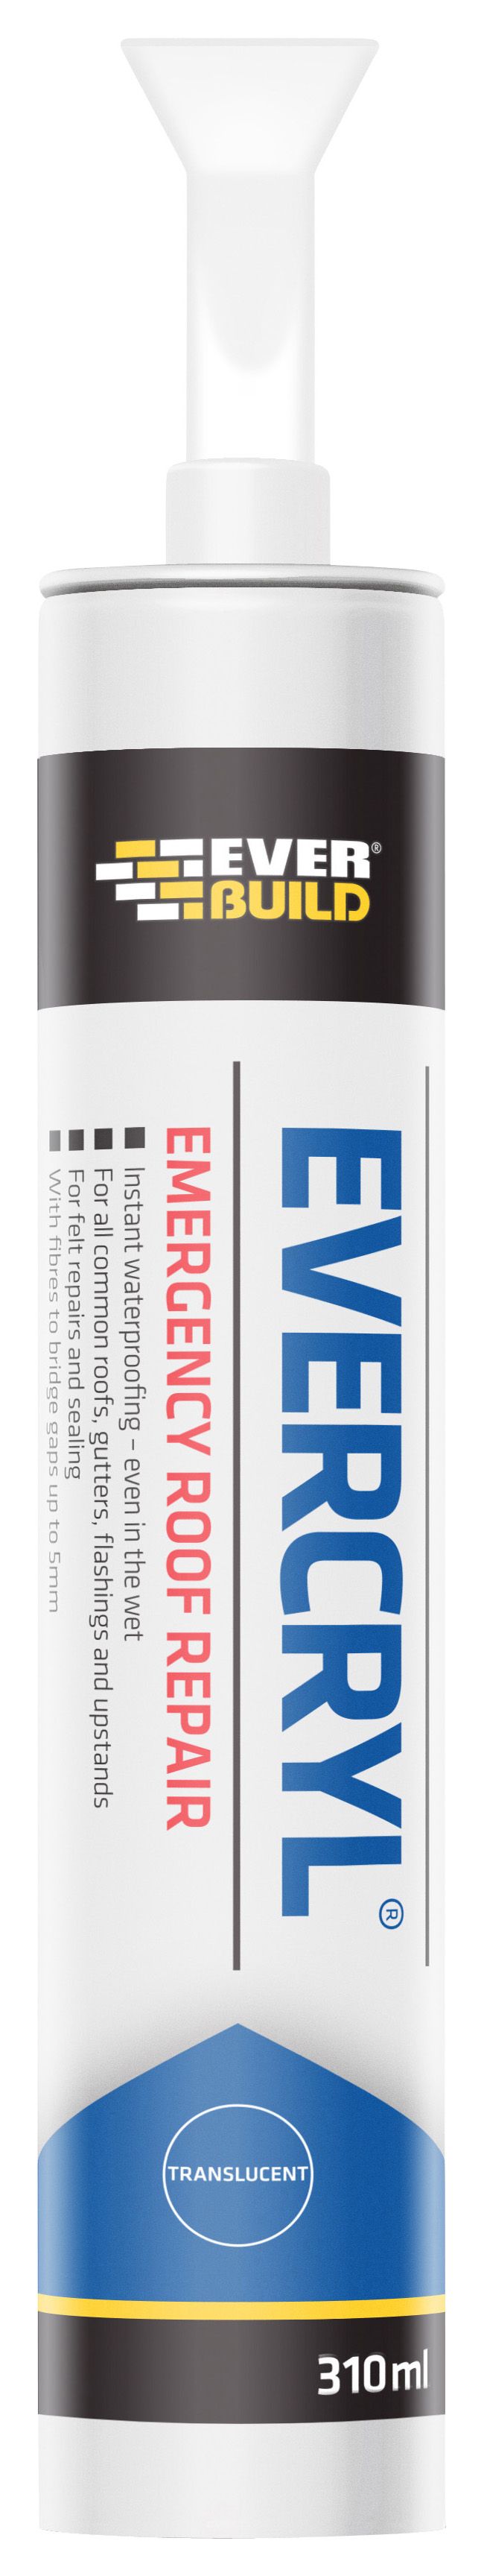 Image of Everbuild Evercryl Emergency Roof Repair Cartridge - Grey